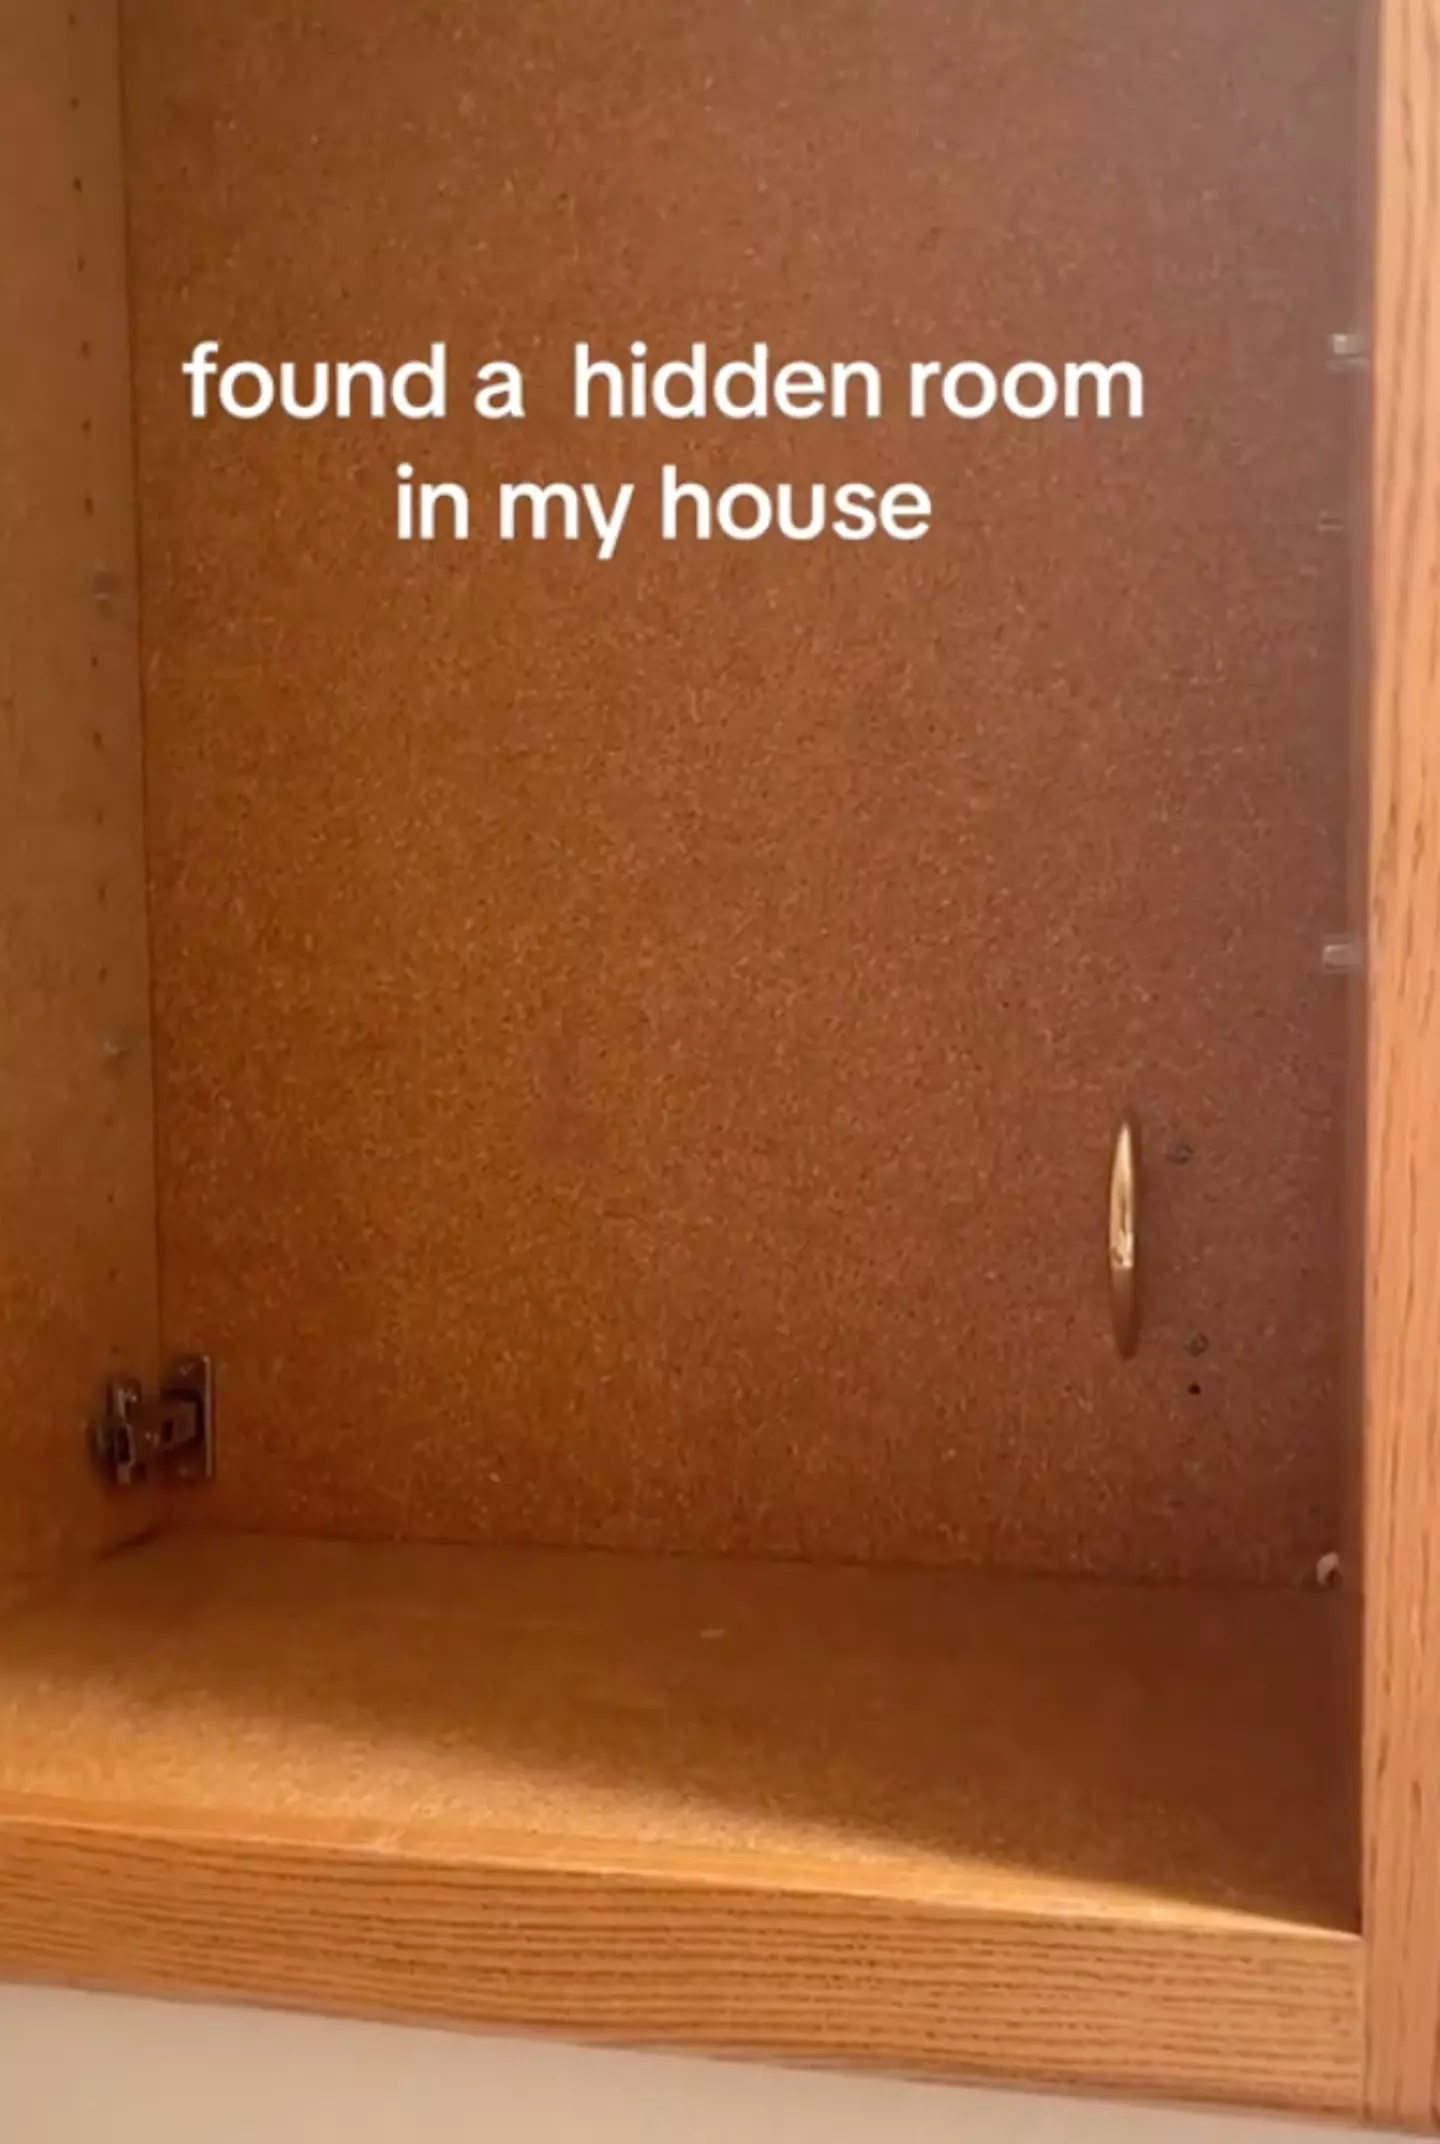 The TikToker found a terrifying secret room.